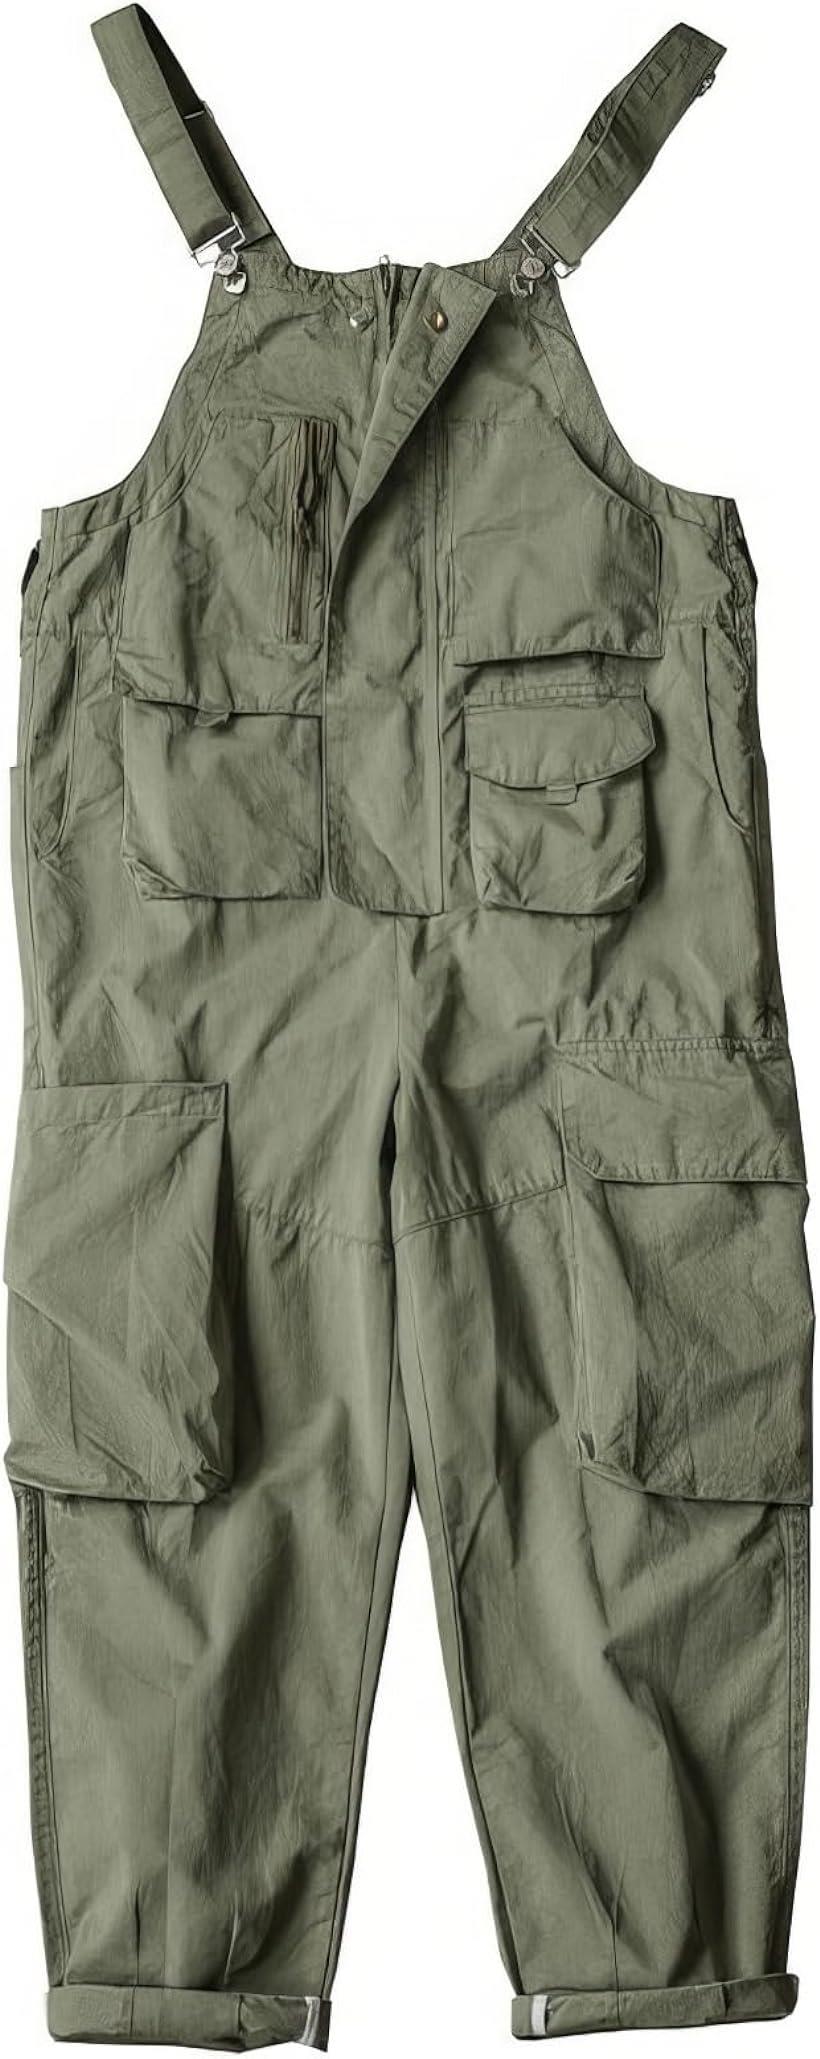 メンズ アメリカンレトロ 作業着サロペット 大きめサイズ ボタン付き ロング 100%綿 作業服 XXL( グリーン, 2XL)